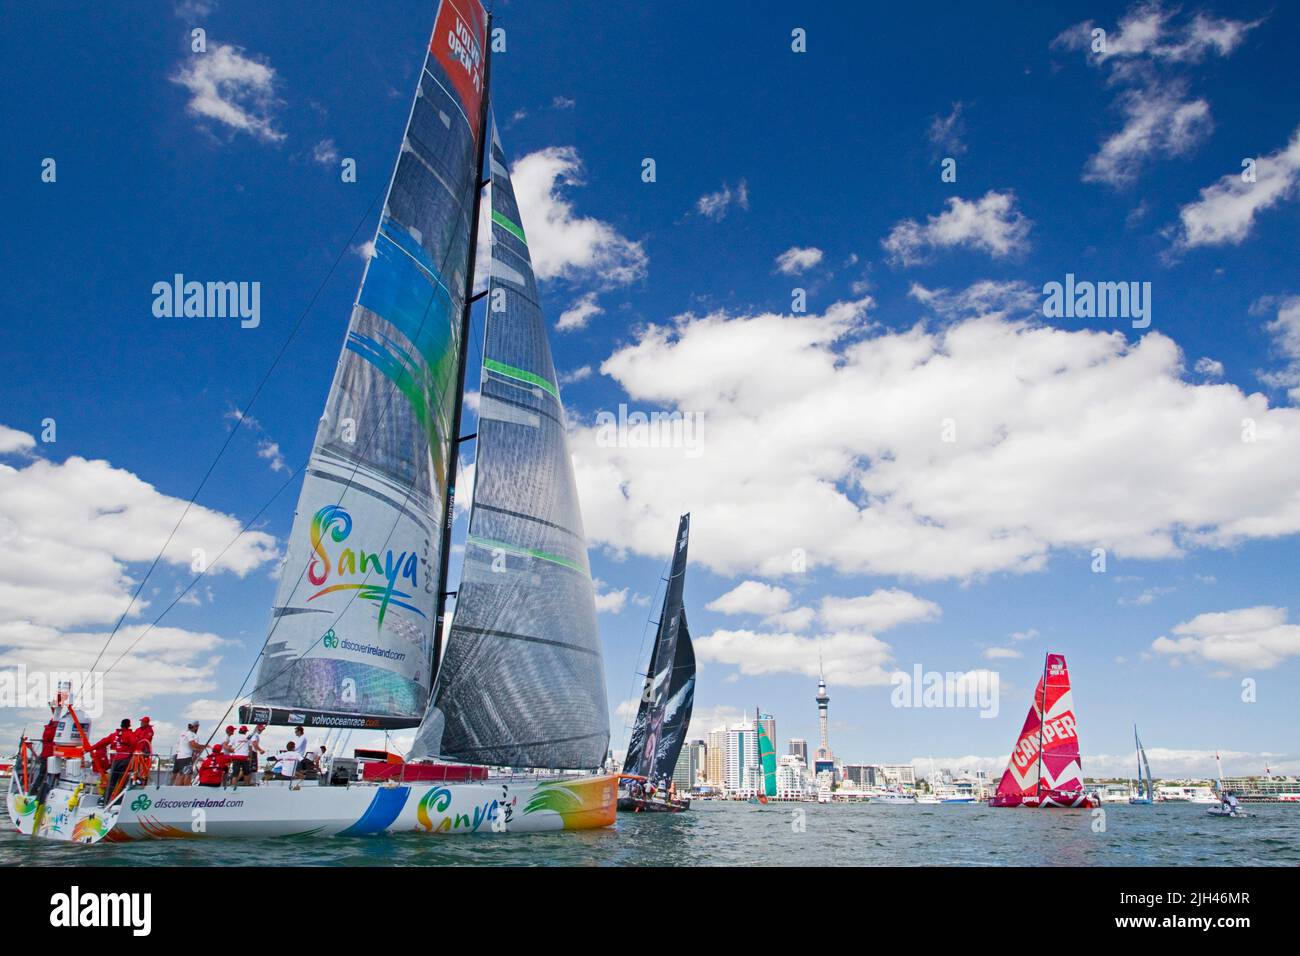 Team Sanya, links mit Puma Ocean Racing, Groupama Sailing Team, Camper mit Emirates Team New Zealand und Team Telefonica nehmen am Pro-am-Rennen Teil Stockfoto